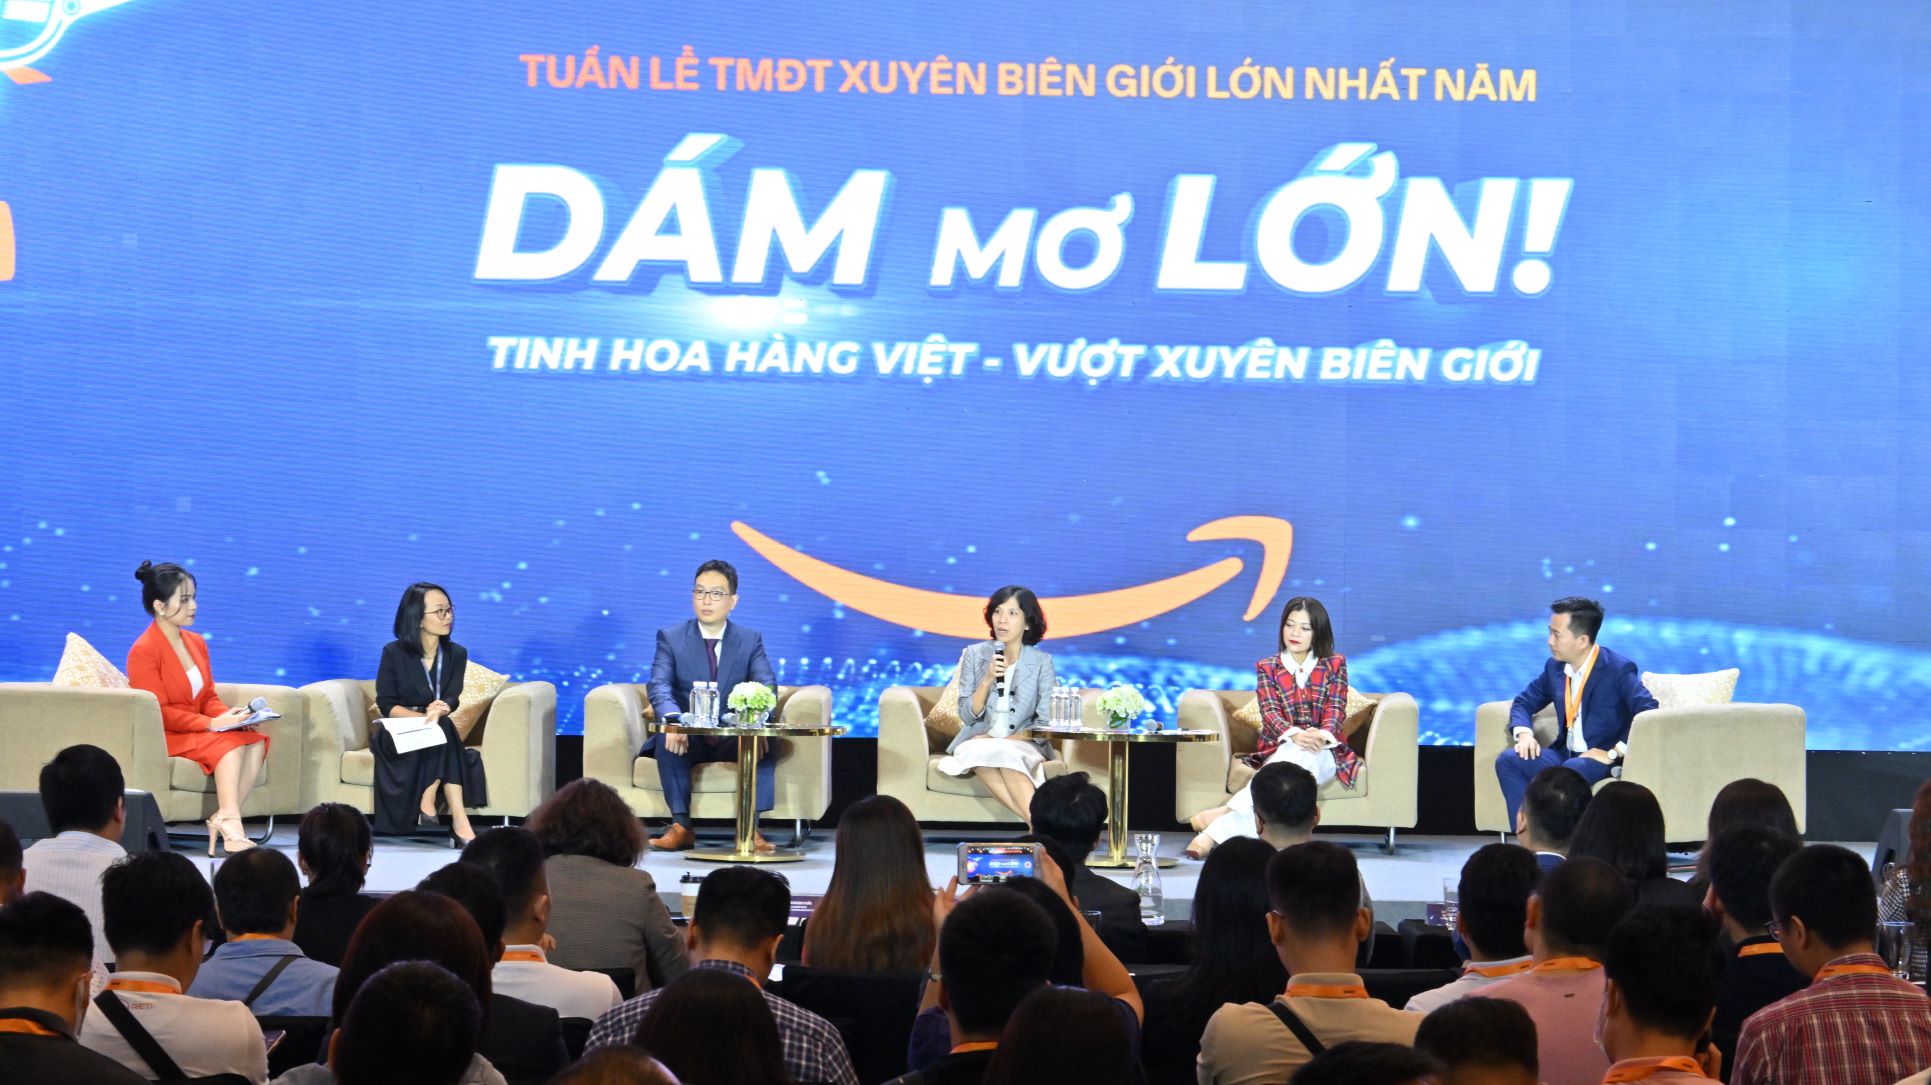 Tại sự kiện, Amazon Global Selling Việt Nam cũng công bố 5 trọng tâm chiến lược 2023 để tạo sức bật cho thị trường Thương mại điện tử Việt Nam và thúc đẩy xuất khẩu online cho đất nước